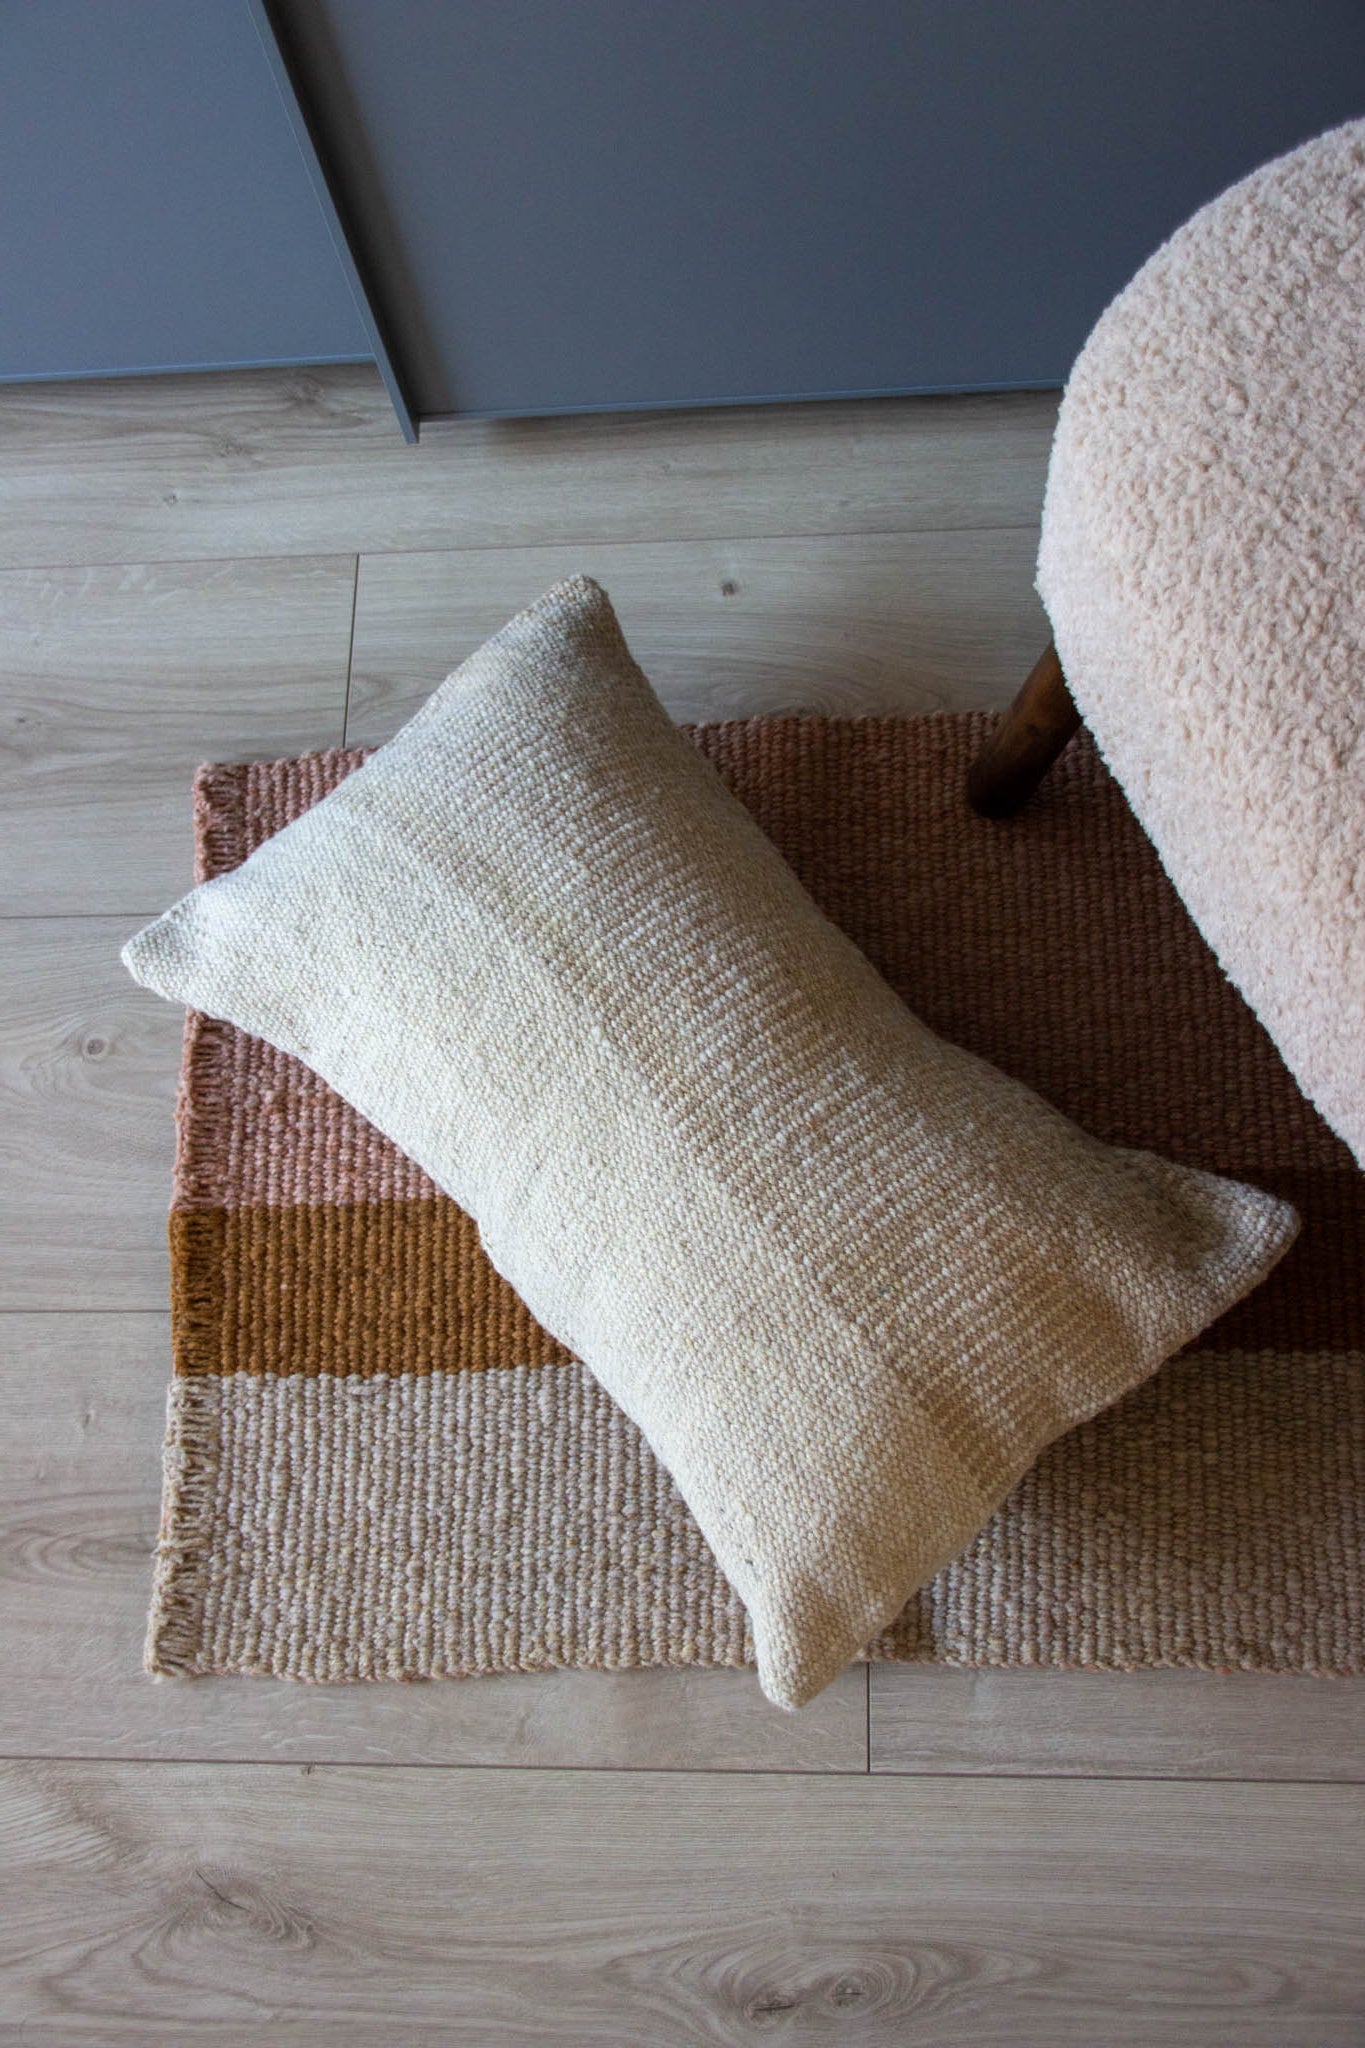 Monte lumbar cushion pillow 100% sheep wool 